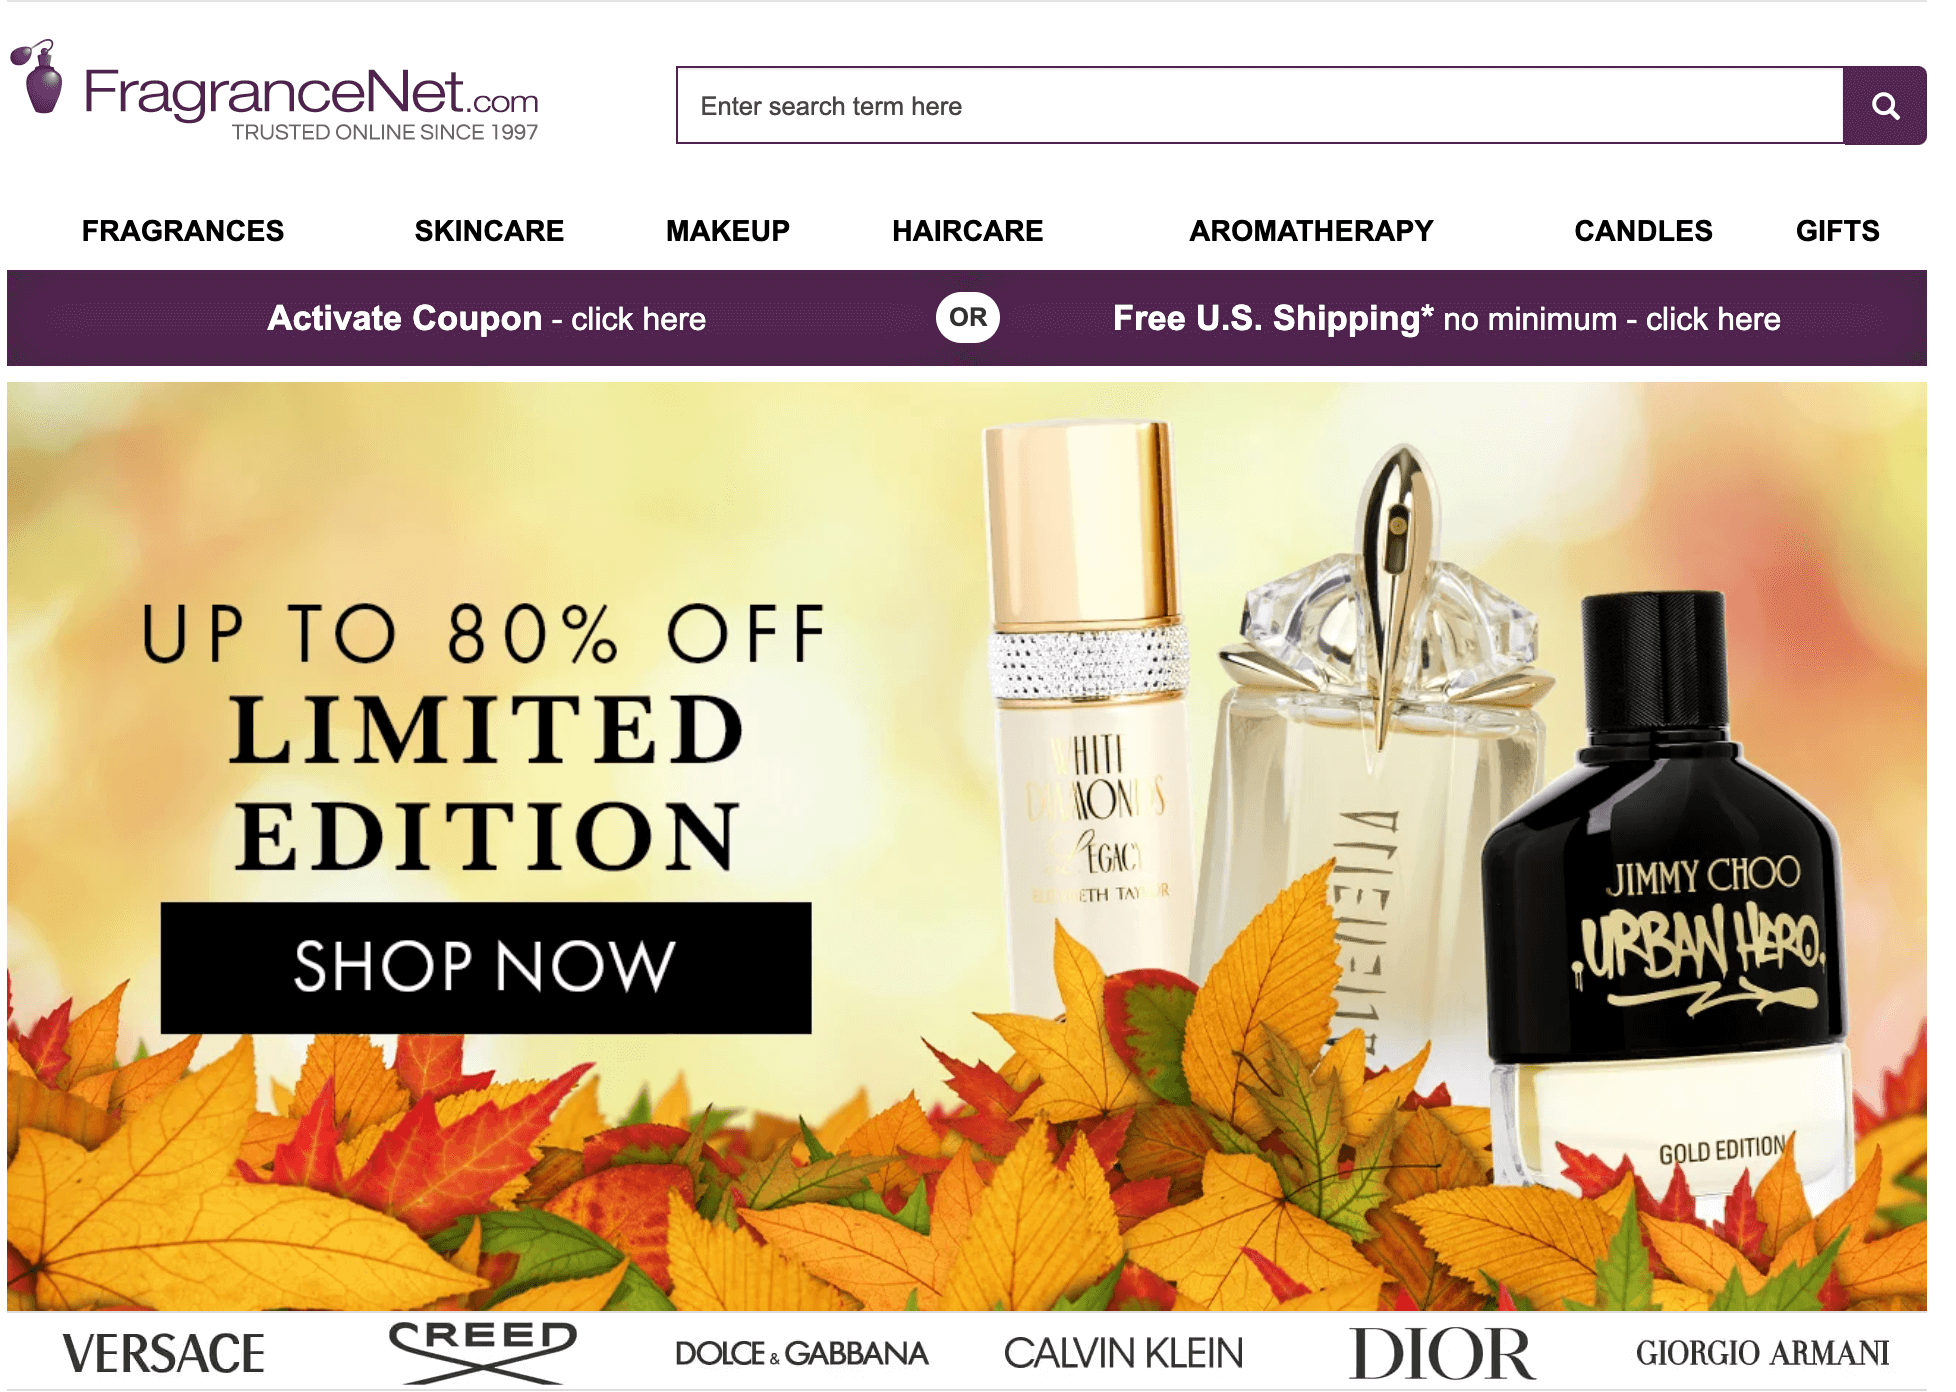 Fragrancenet's homepage